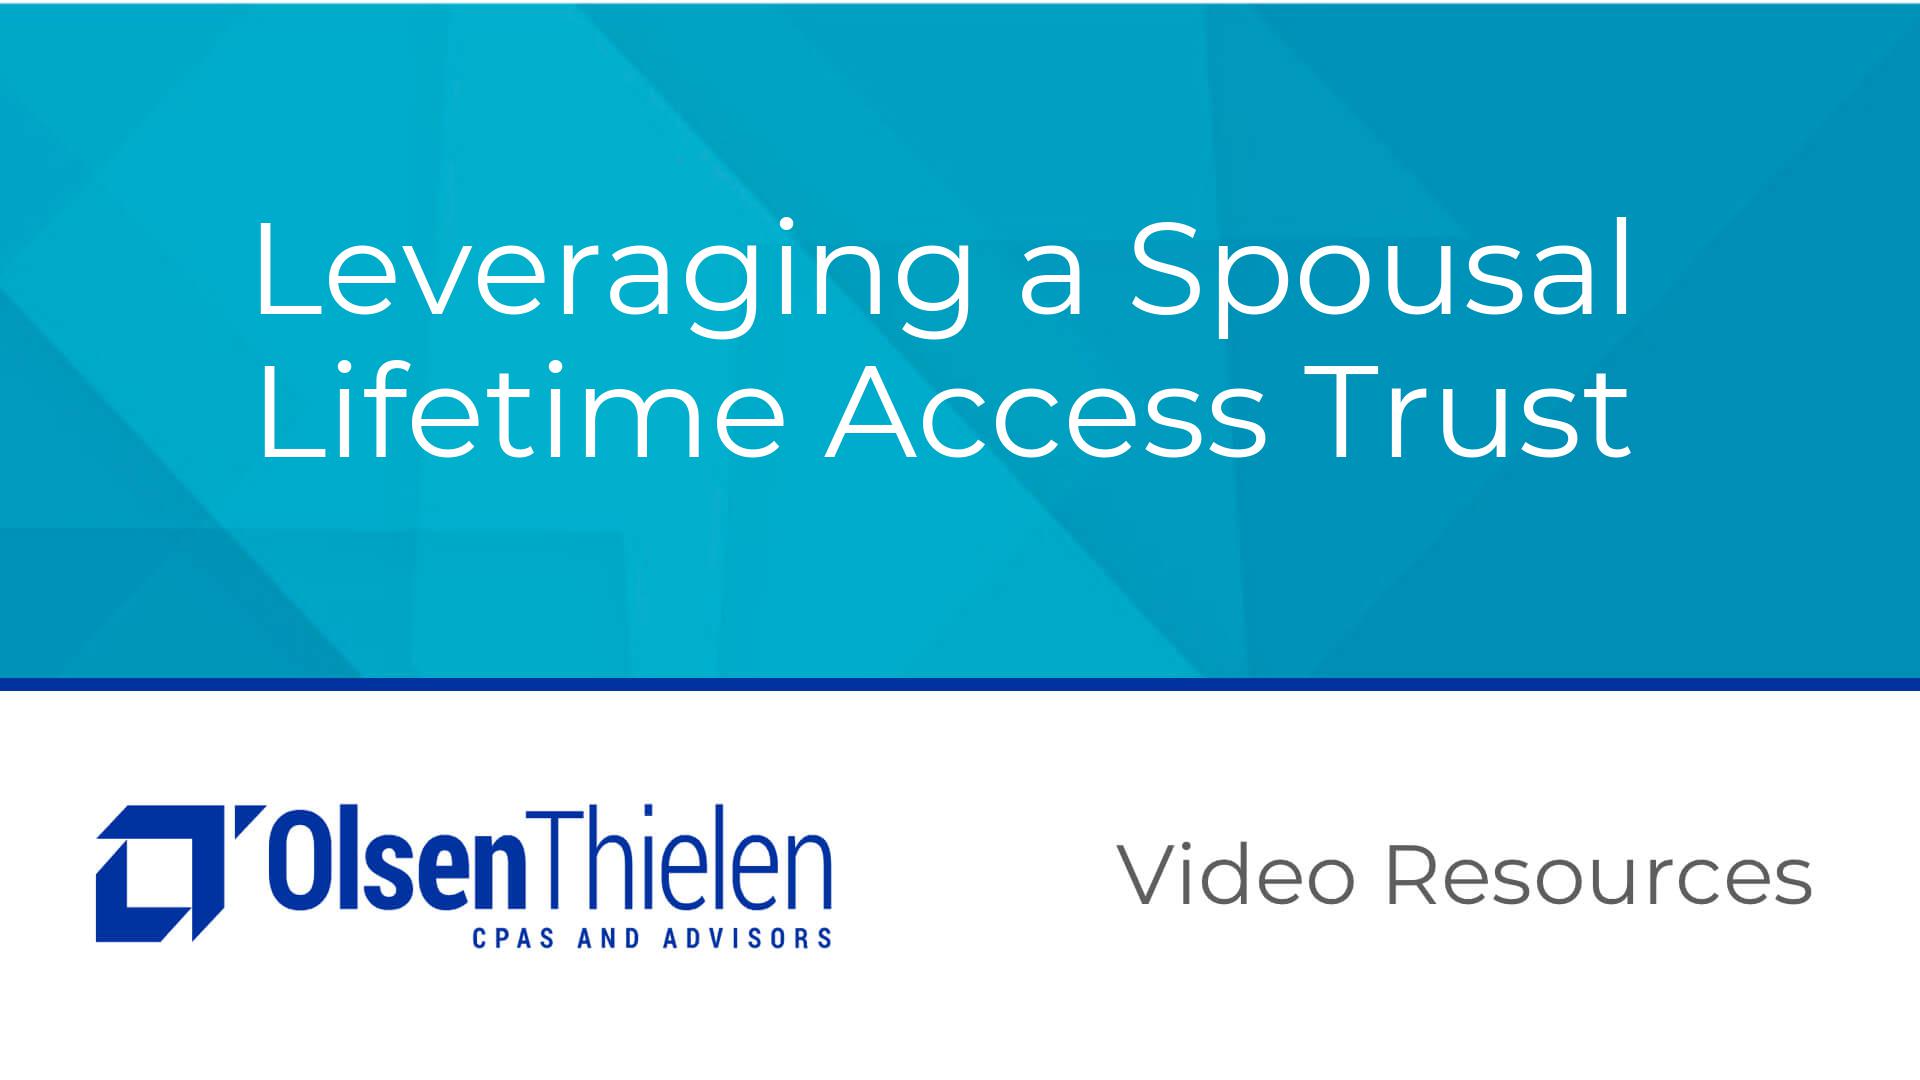 Leveraging a Spousal Lifetime Access Trust